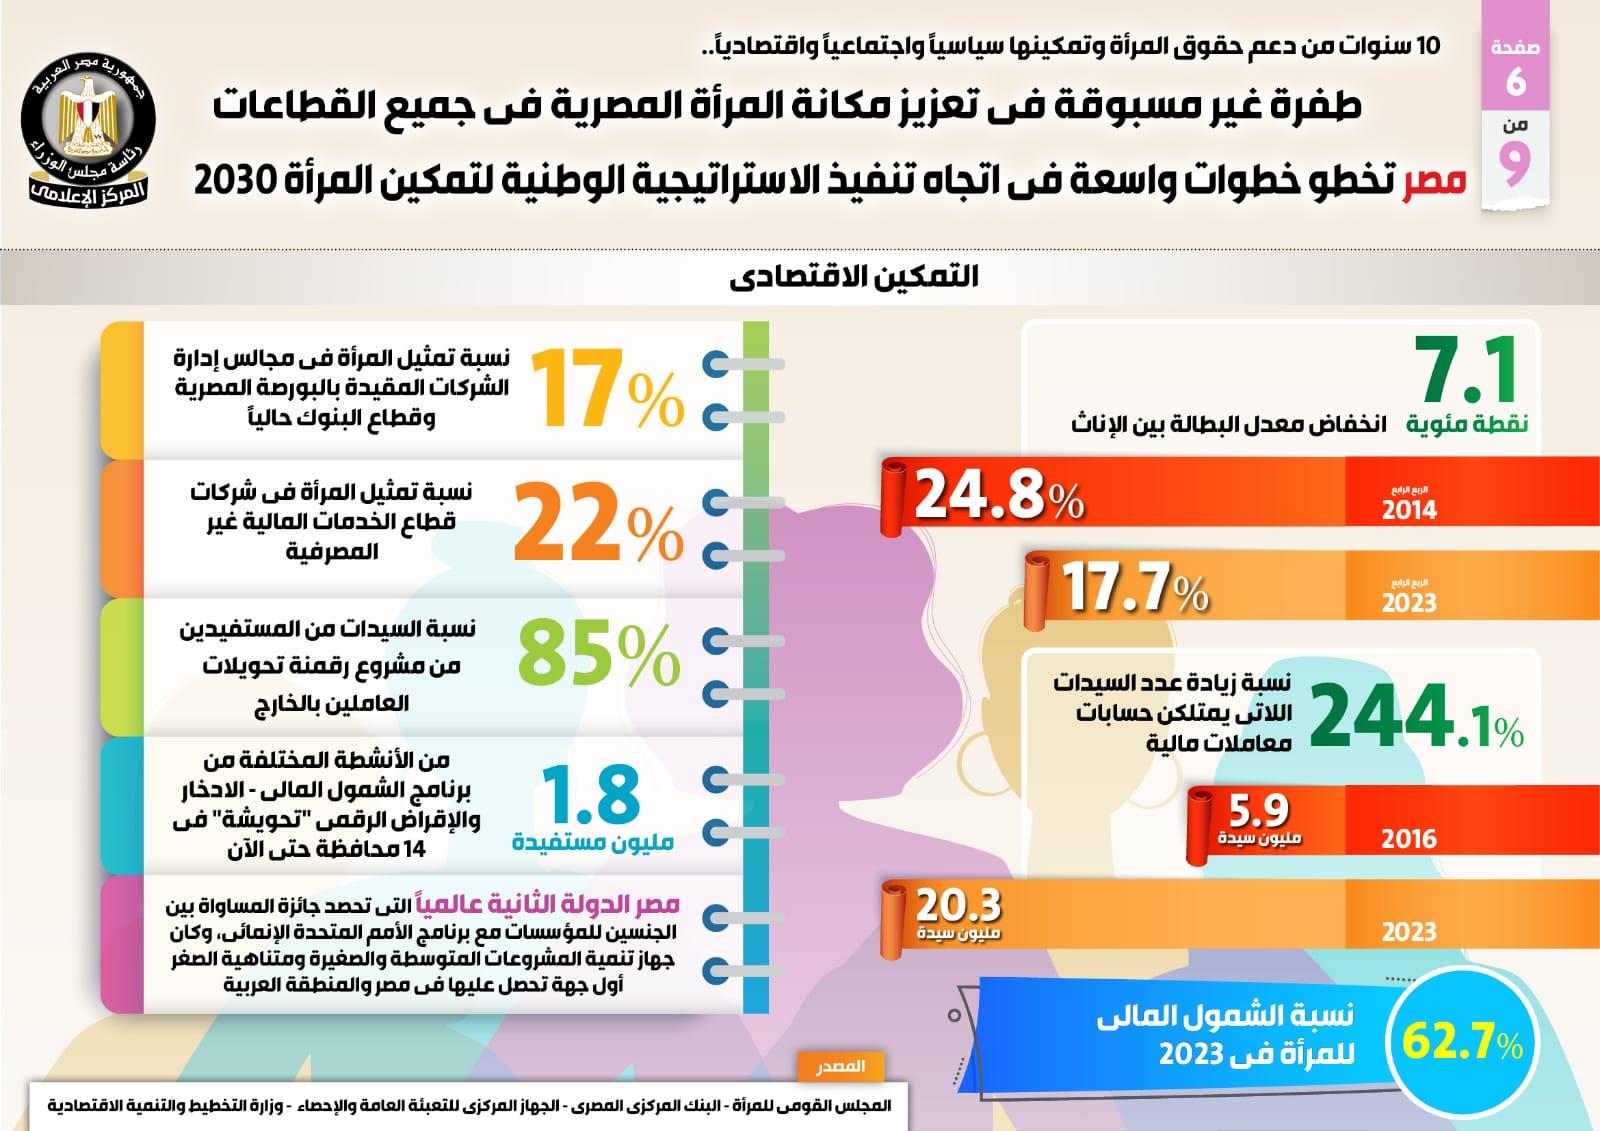 طفرة غير مسبوقة في تعزيز مكانة المرأة المصرية في جميع القطاعات